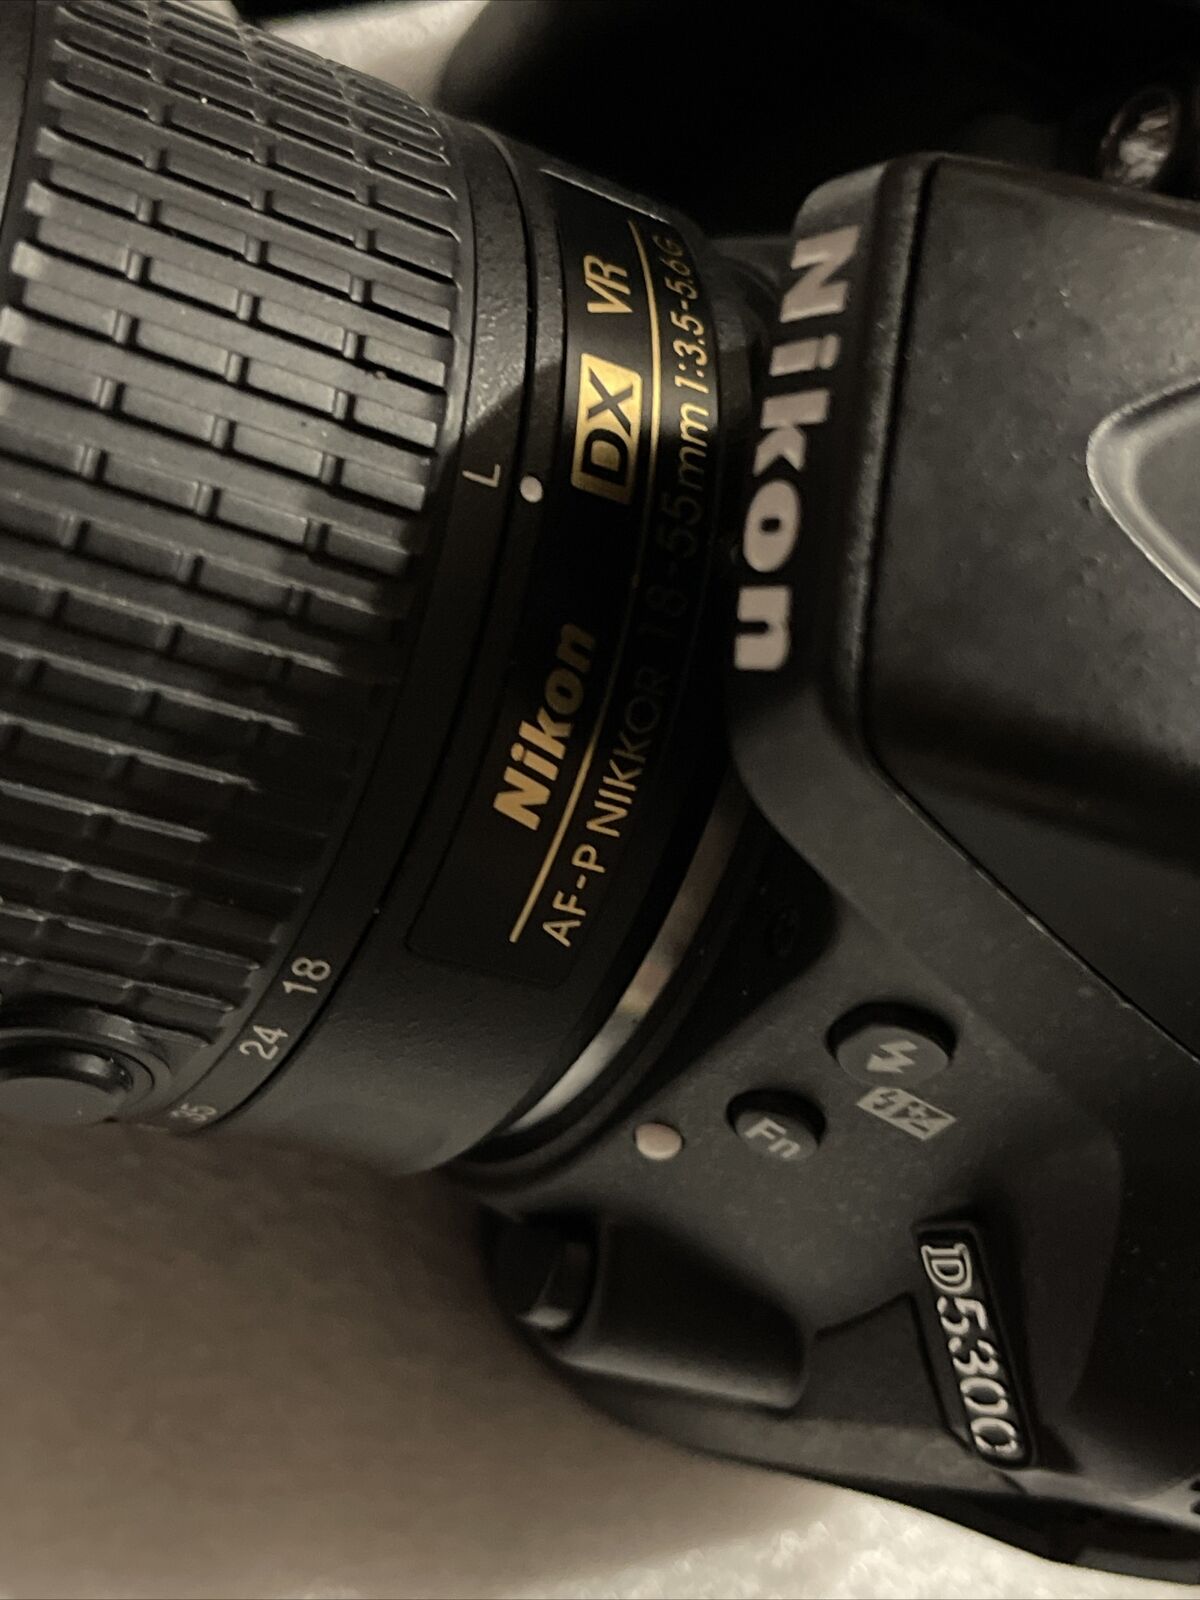 Nikon D5300 24.2MP Digital SLR Camera Kit W/Nikon AF-P Nikkor 18-55mm Lens 32GB